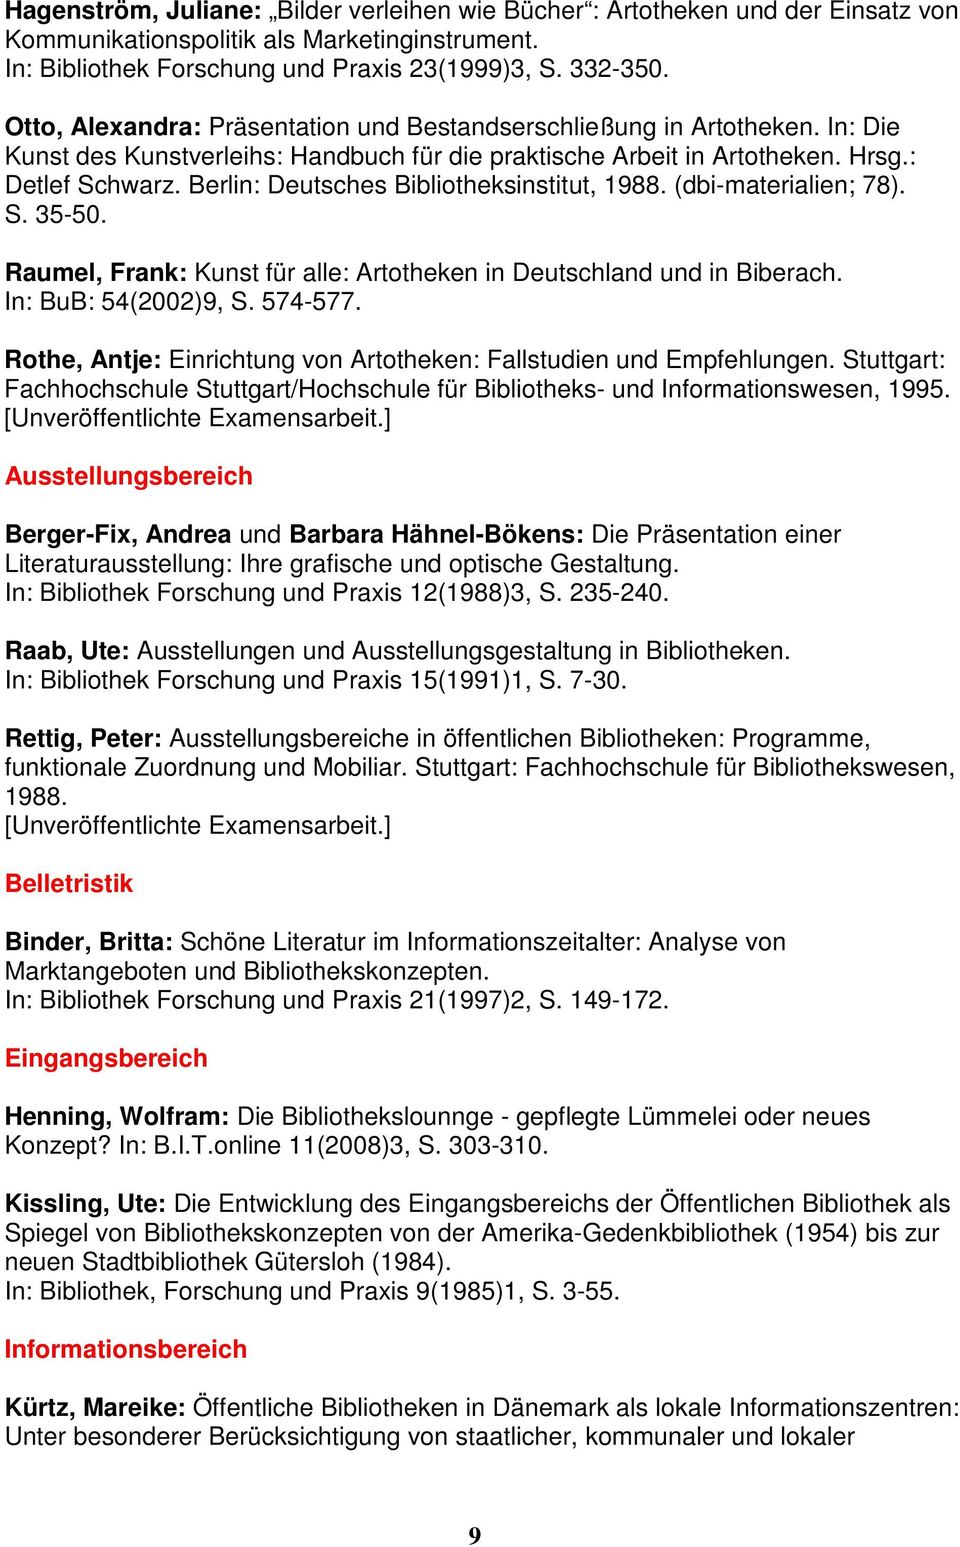 Berlin: Deutsches Bibliotheksinstitut, 1988. (dbi-materialien; 78). S. 35-50. Raumel, Frank: Kunst für alle: Artotheken in Deutschland und in Biberach. In: BuB: 54(2002)9, S. 574-577.